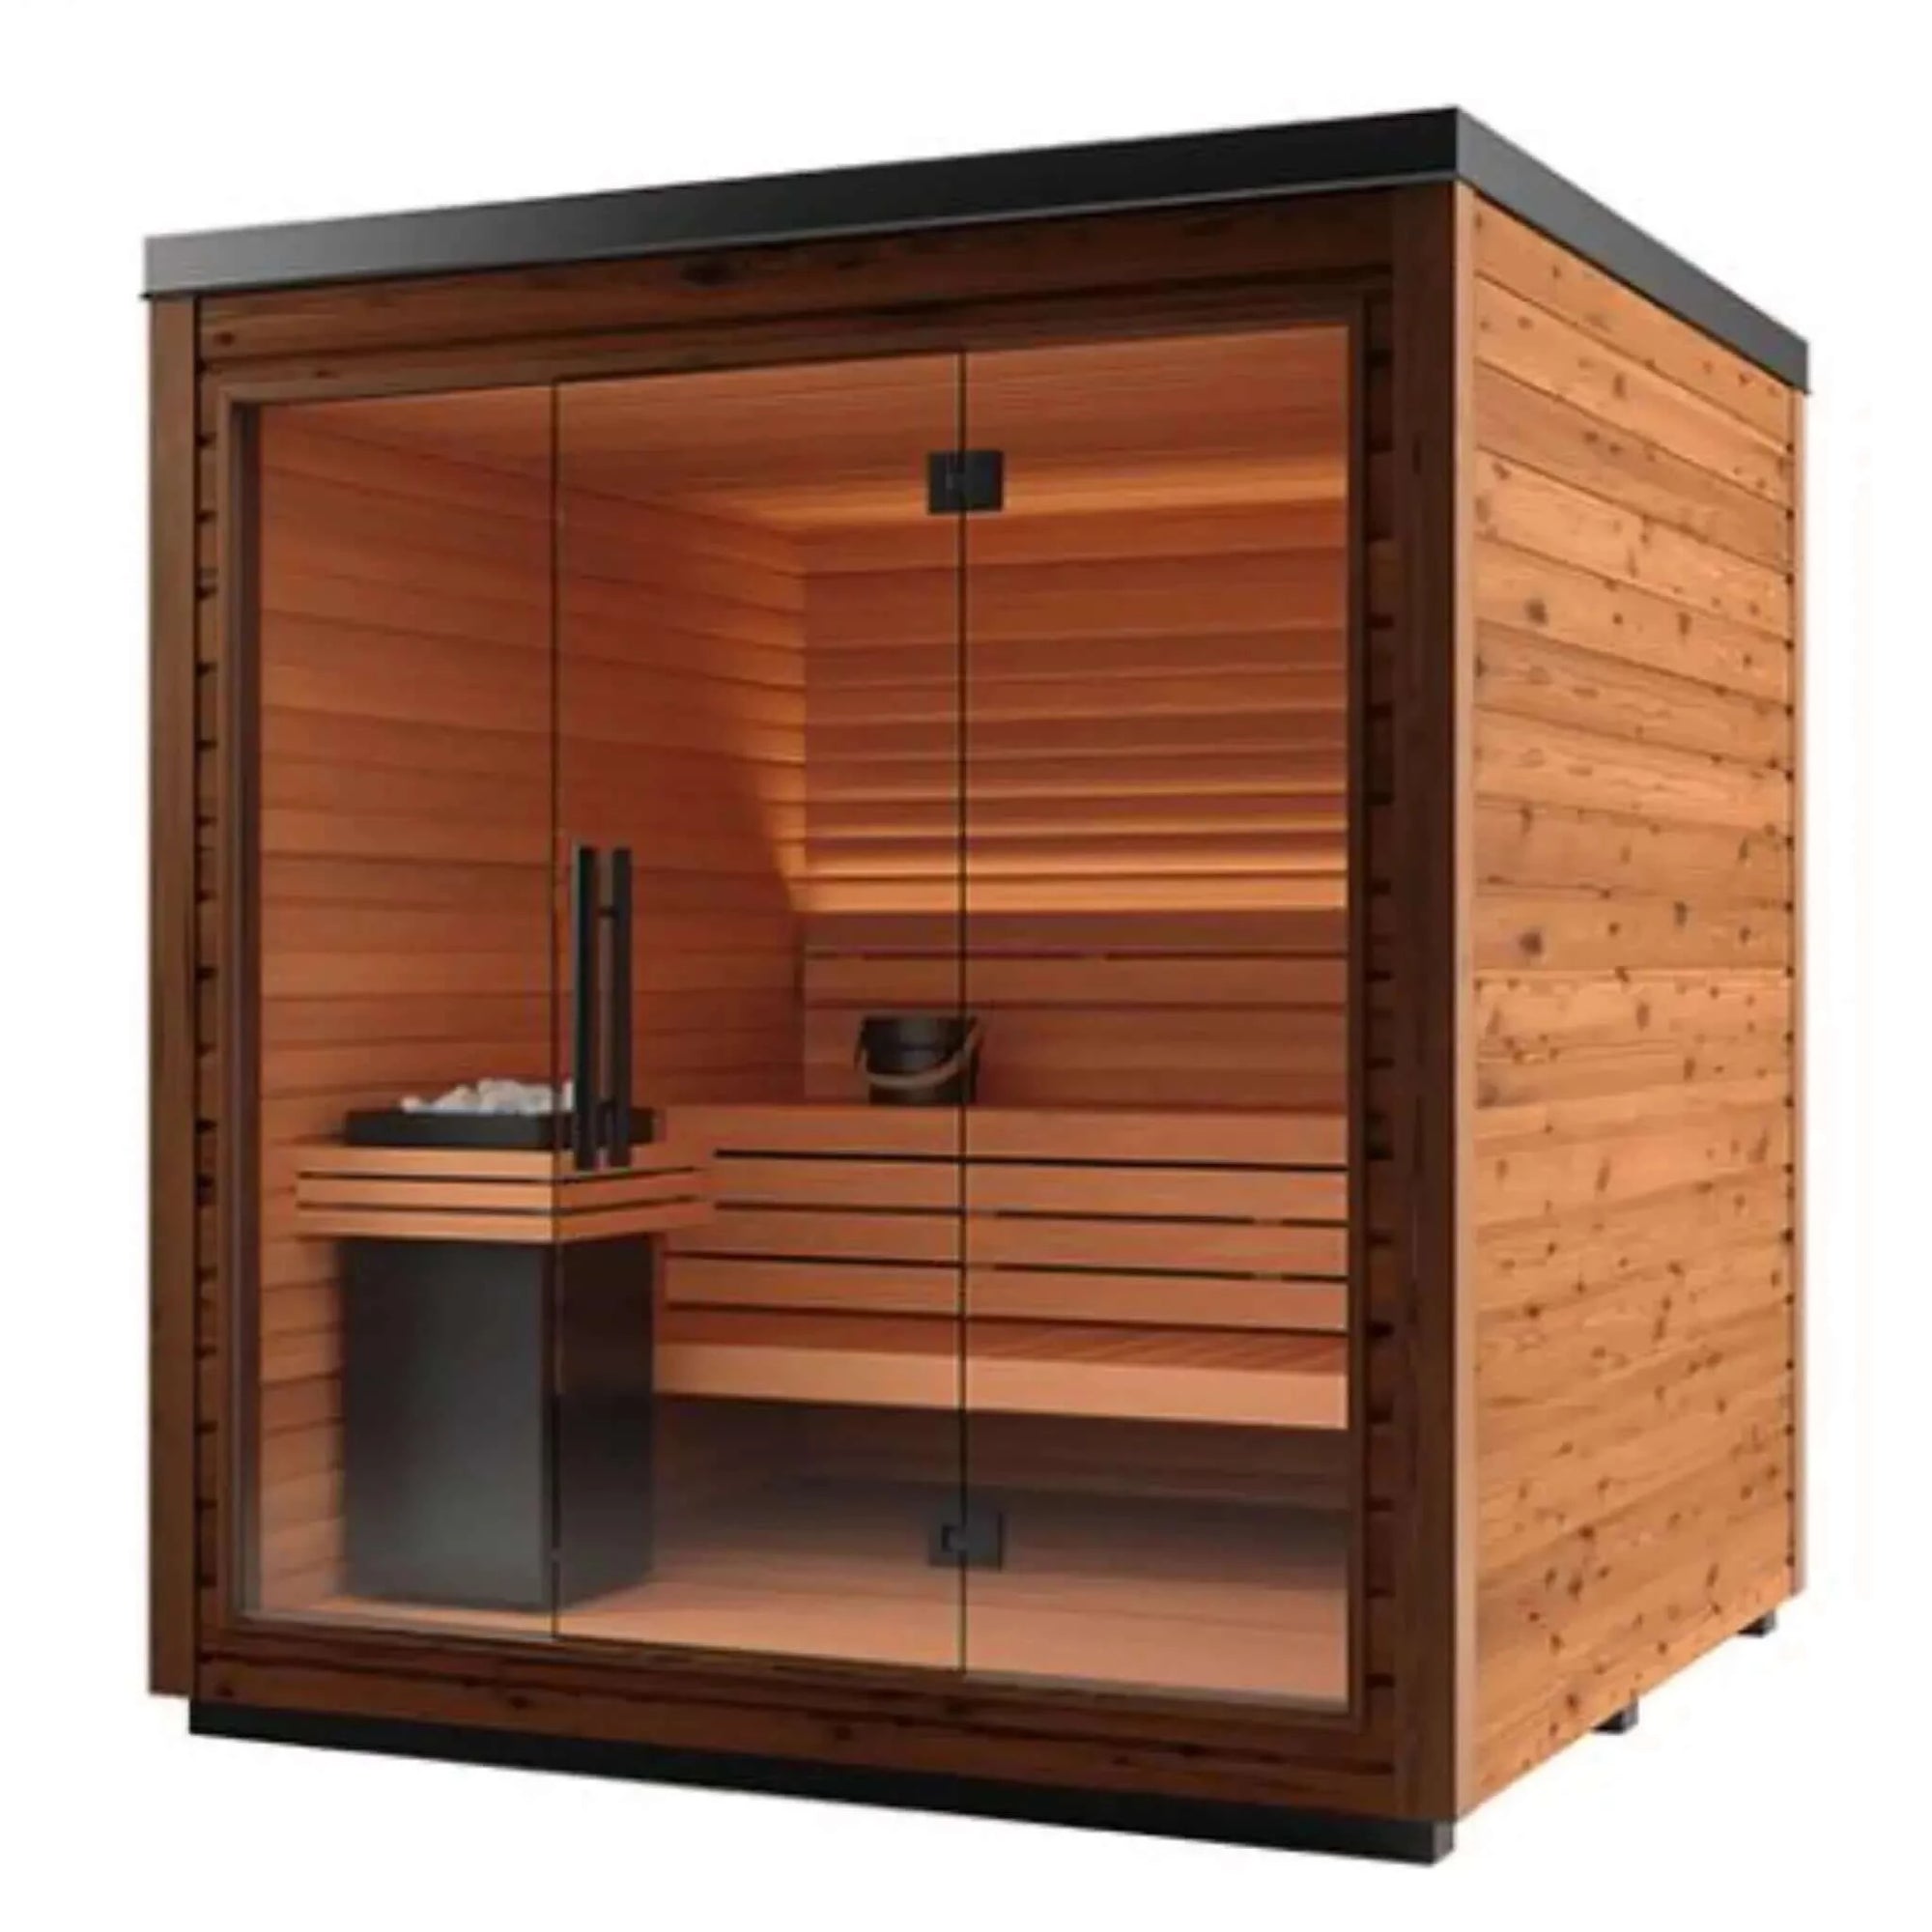 Auroom Mira L Cabin Sauna Kit